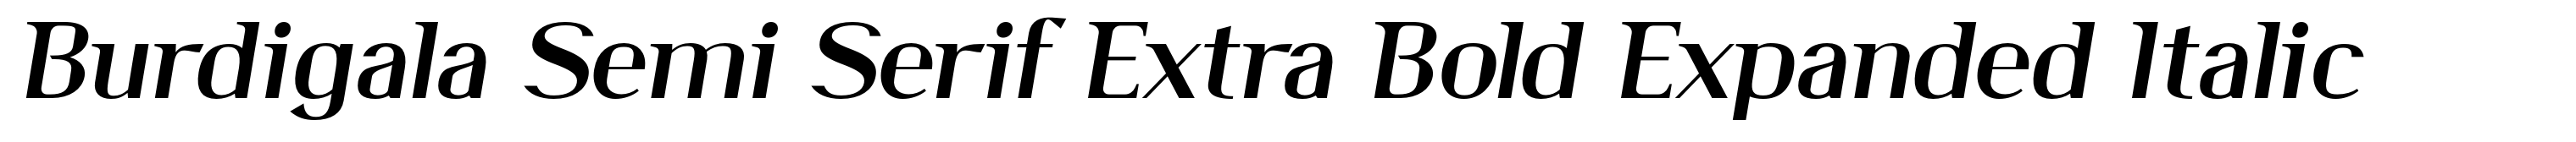 Burdigala Semi Serif Extra Bold Expanded Italic